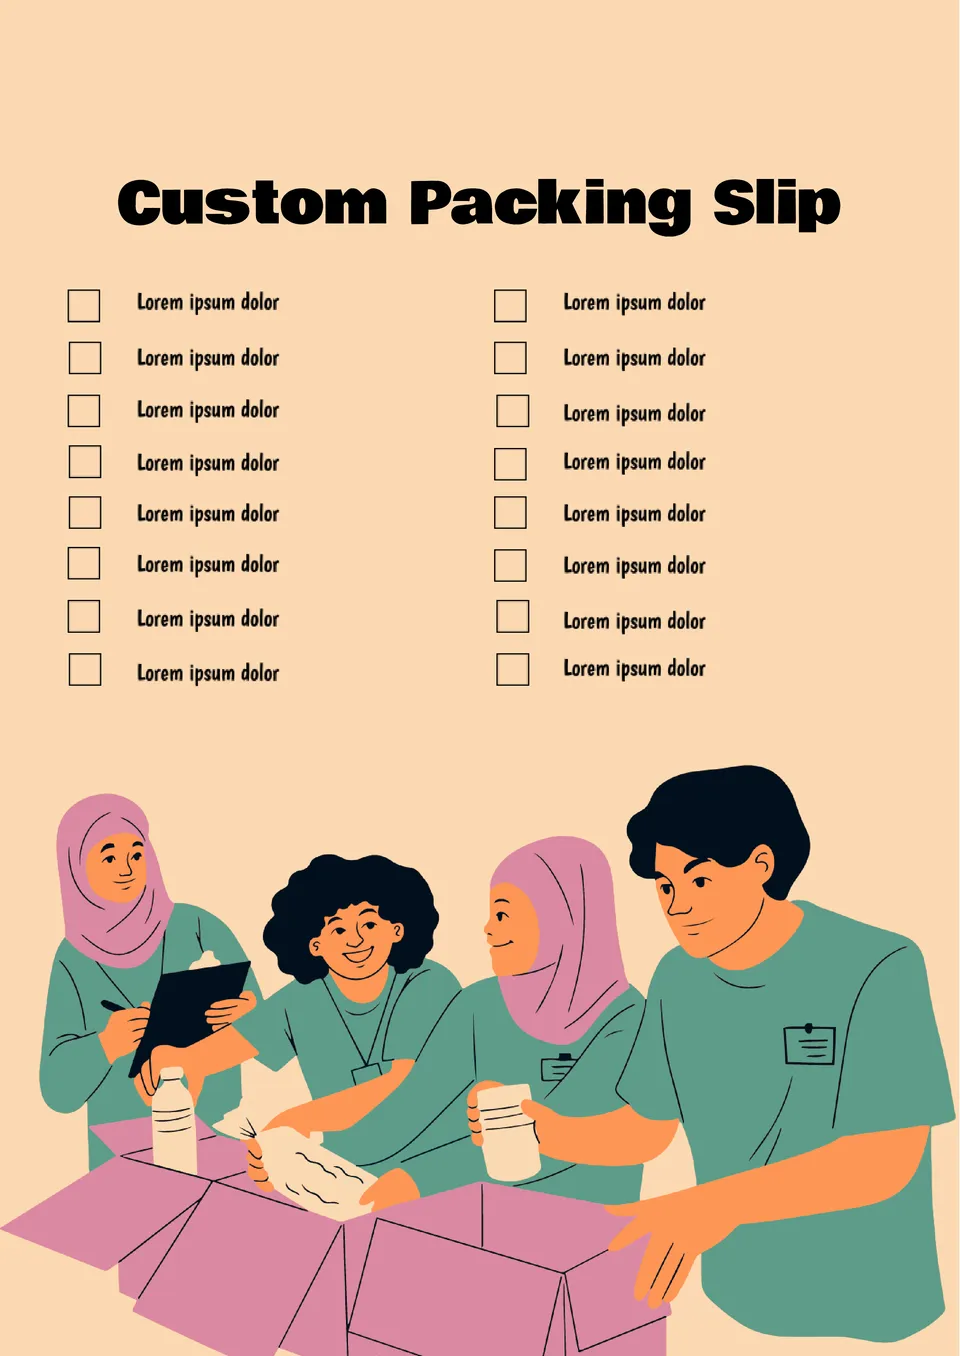 Custom Packing Slip Template.docx